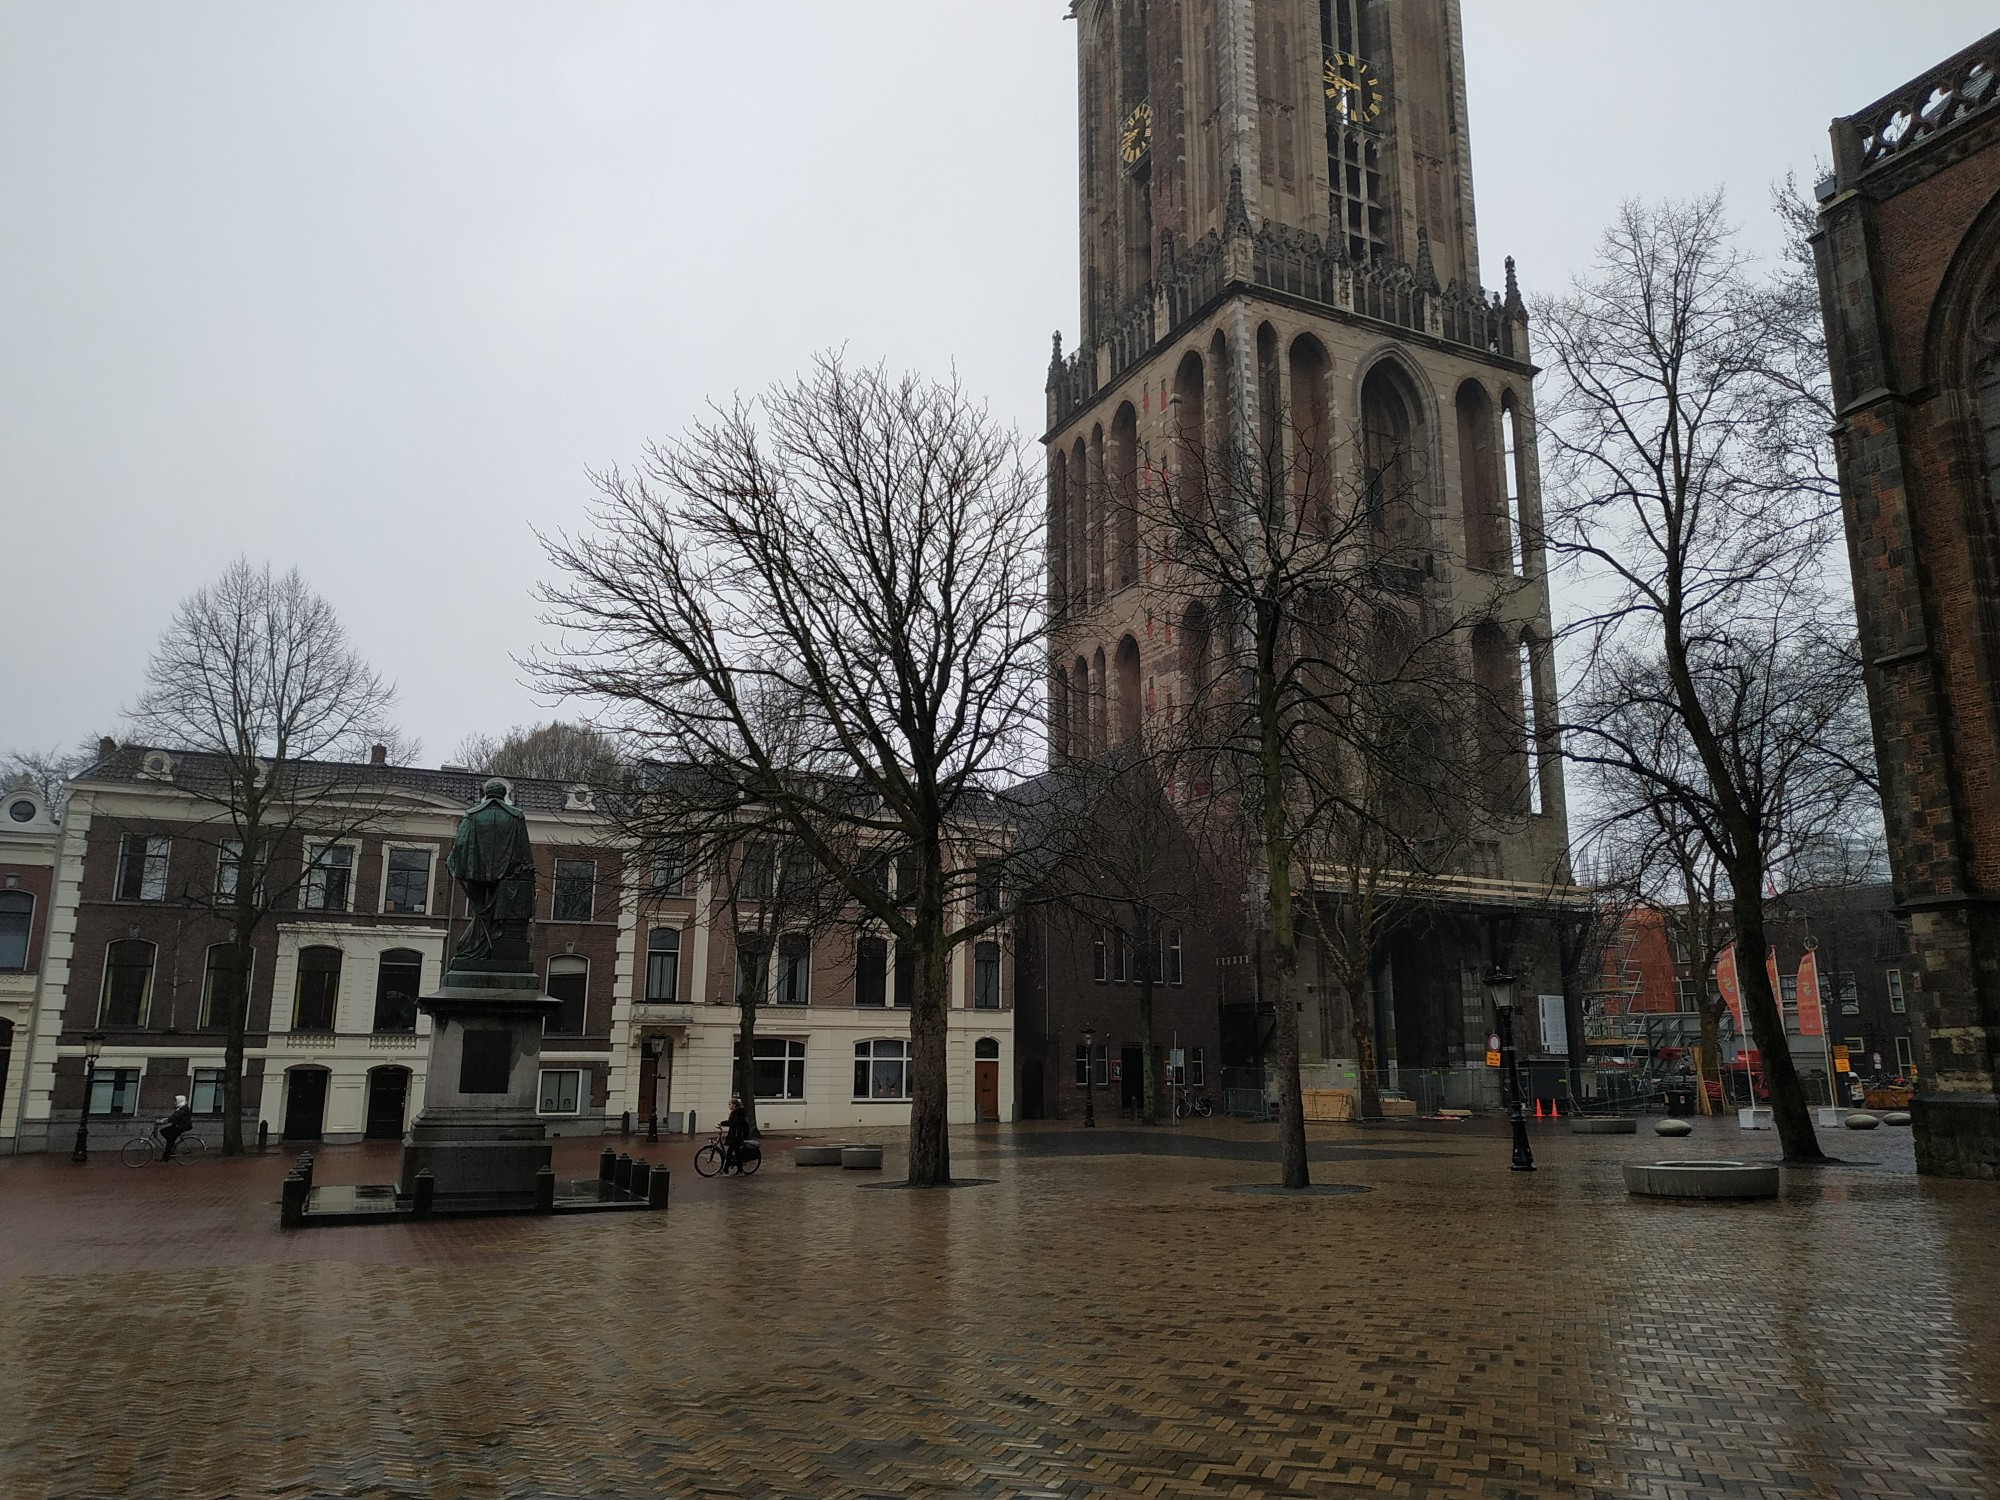 Utrecht, Netherlands